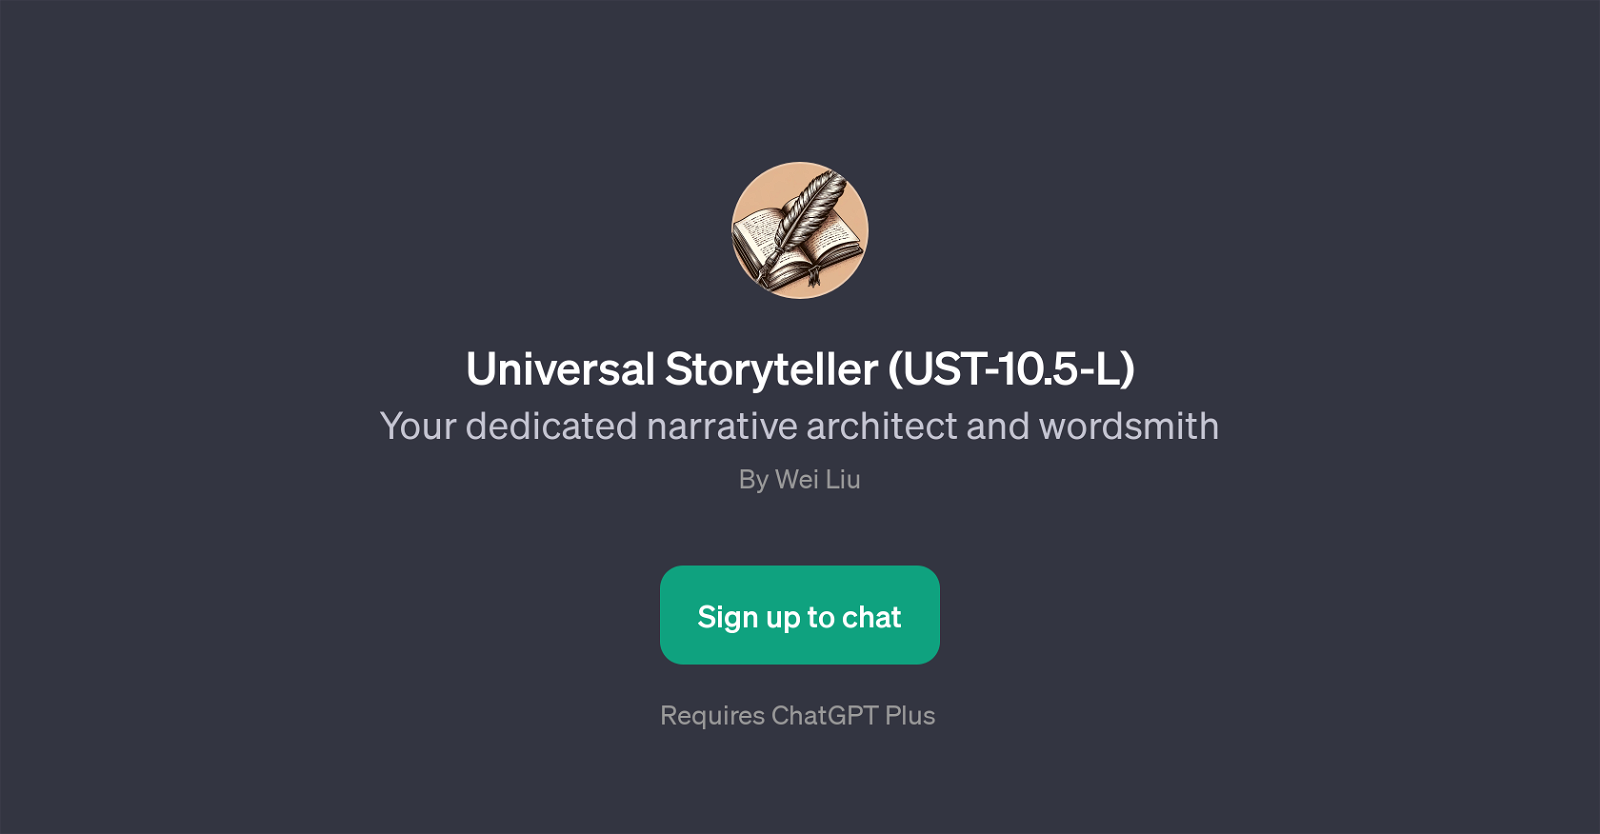 Universal Storyteller (UST-10.5-L) website